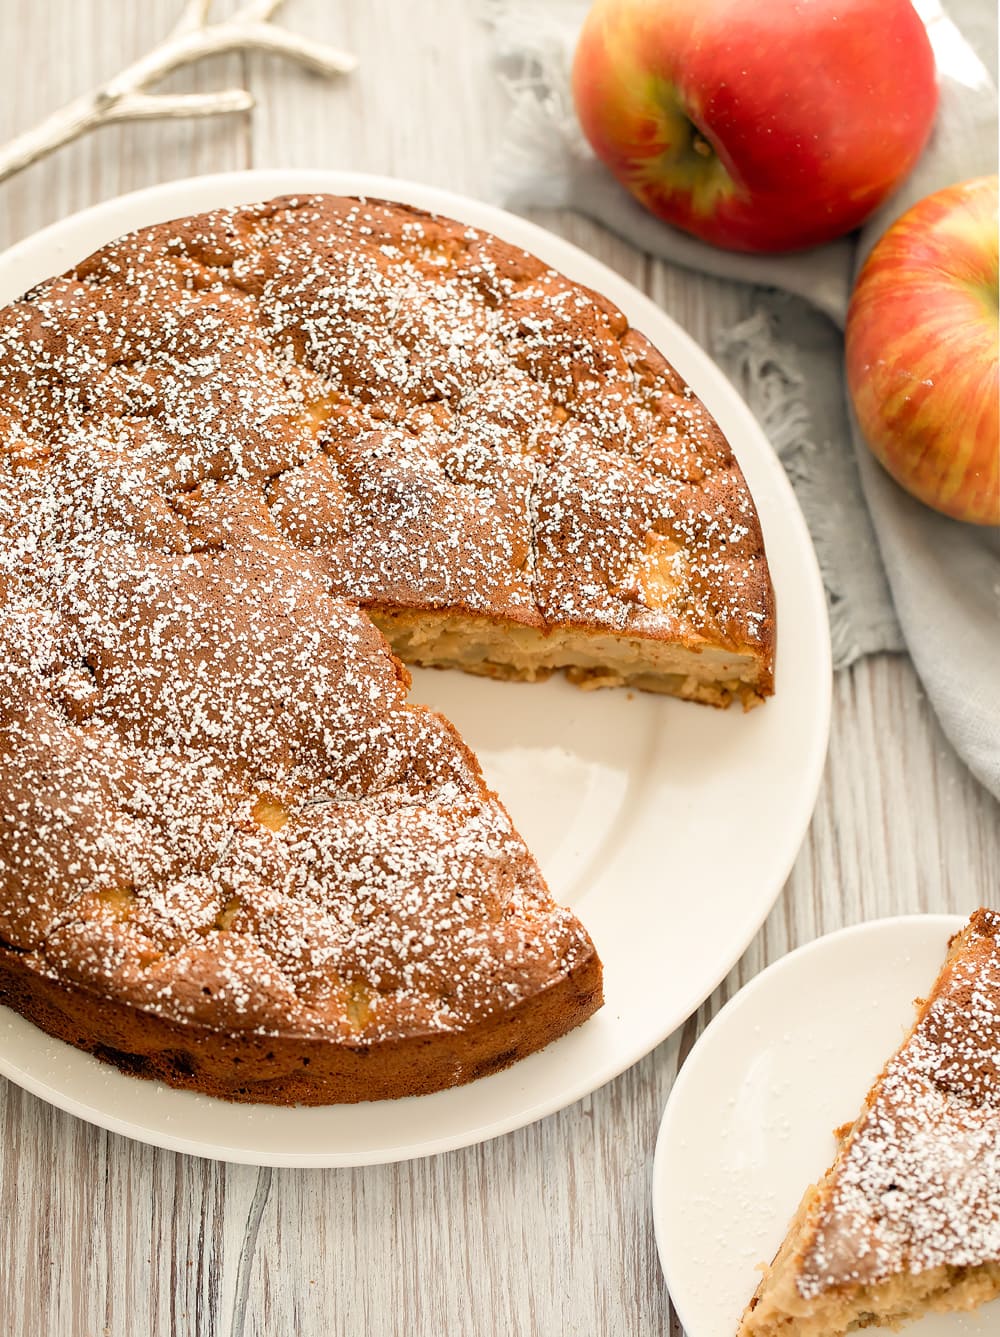 Easy Apple Cake with Just 4 Ingredients! - Kirbie's Cravings